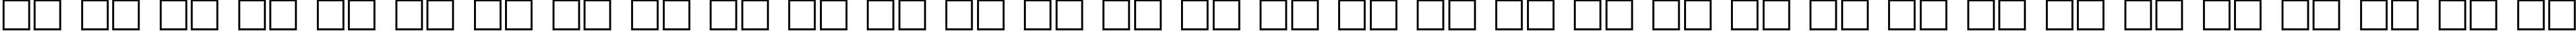 Пример написания русского алфавита шрифтом Ogilvie Regular